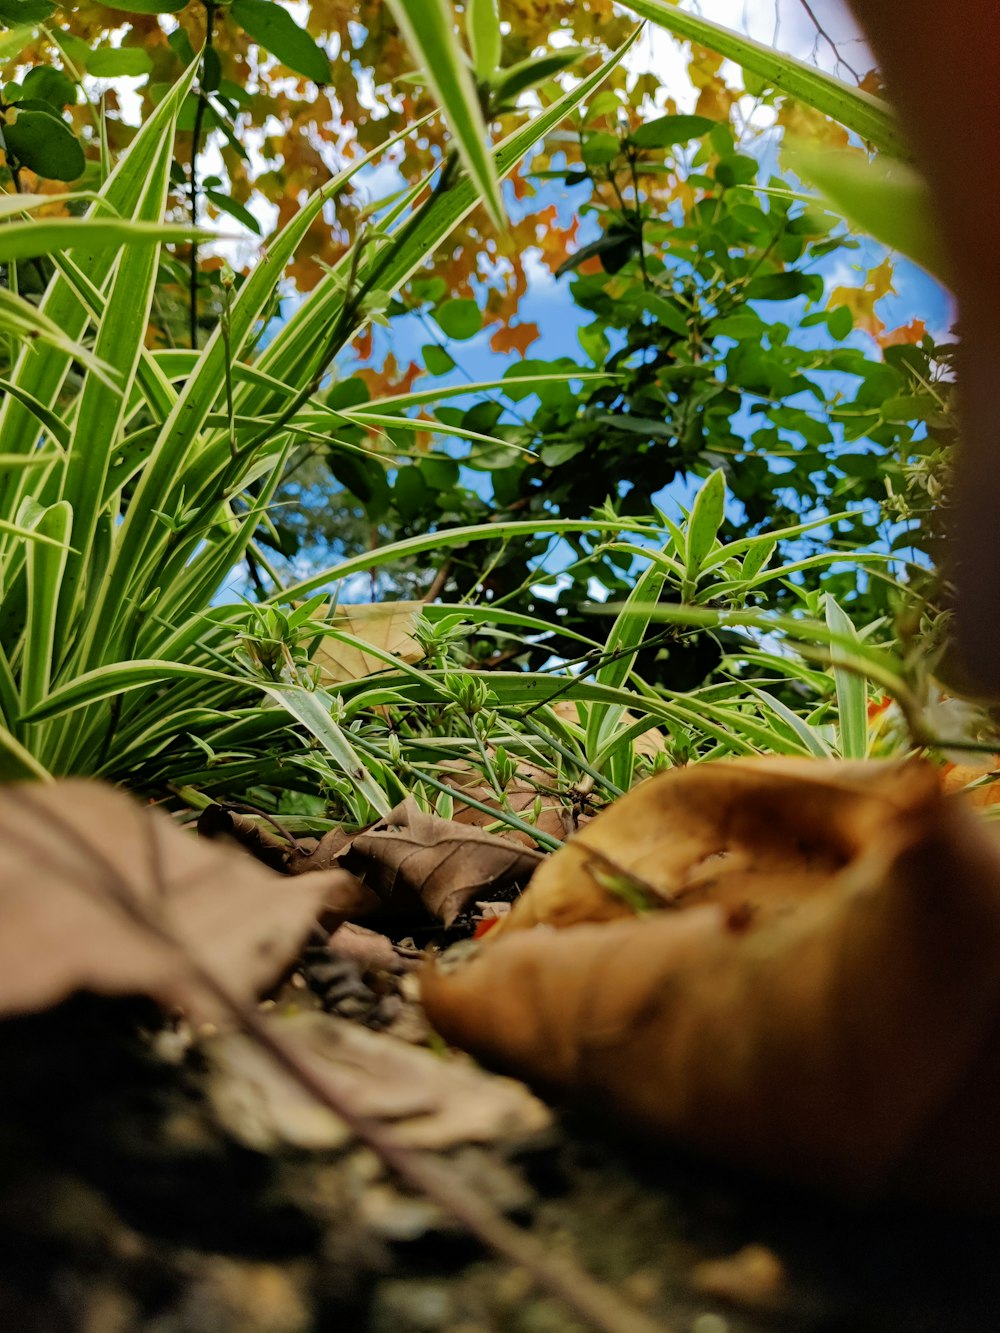 um close up de uma planta frondosa no chão